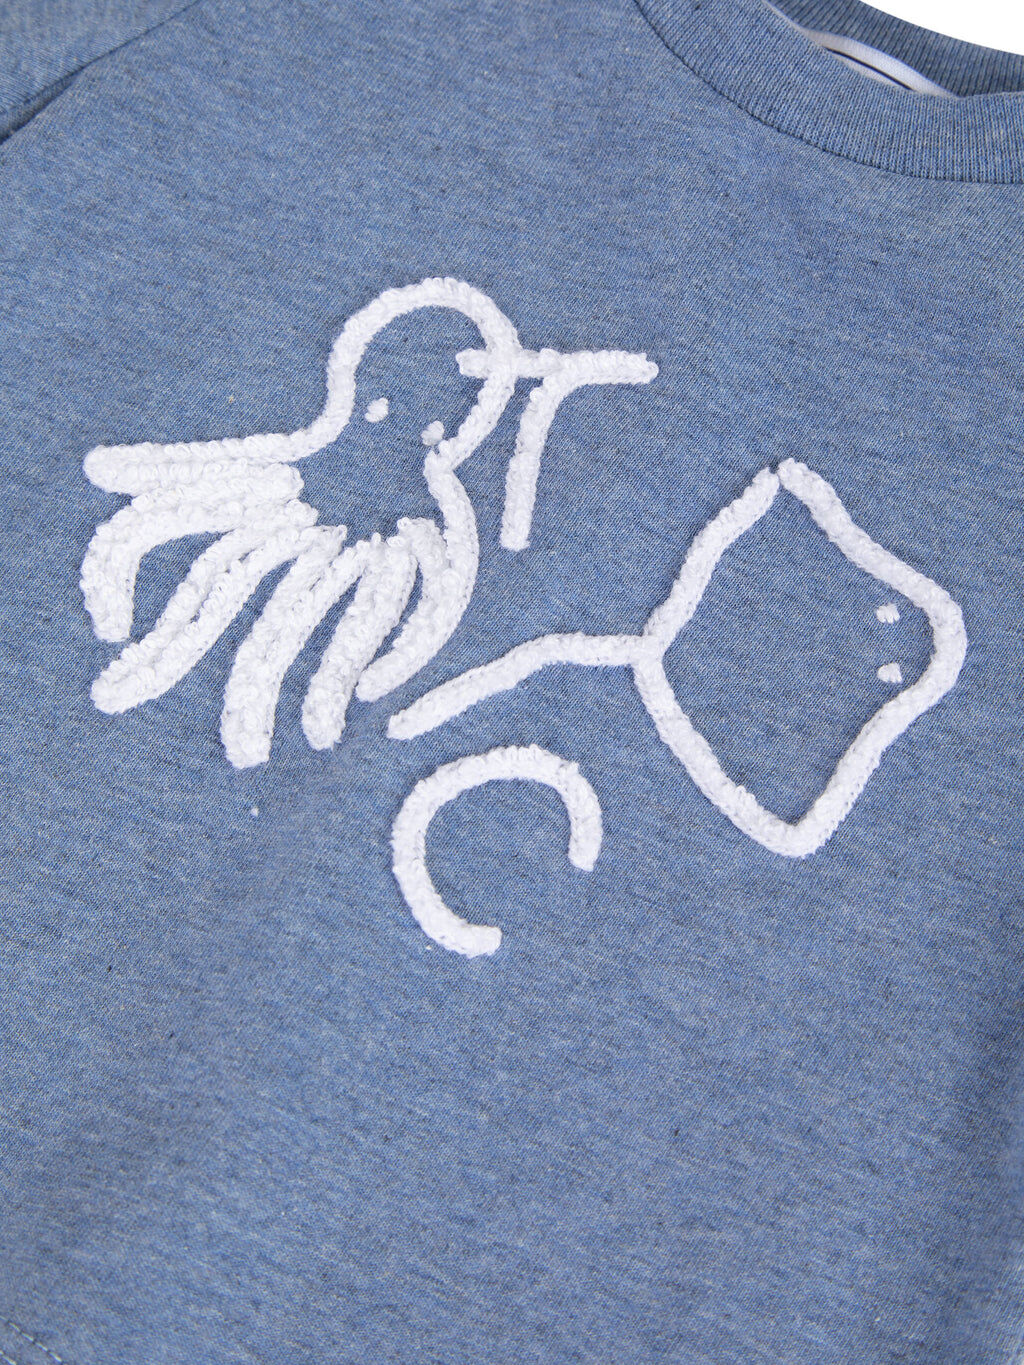 T-shirt - Jersey Blue Illustration ocean